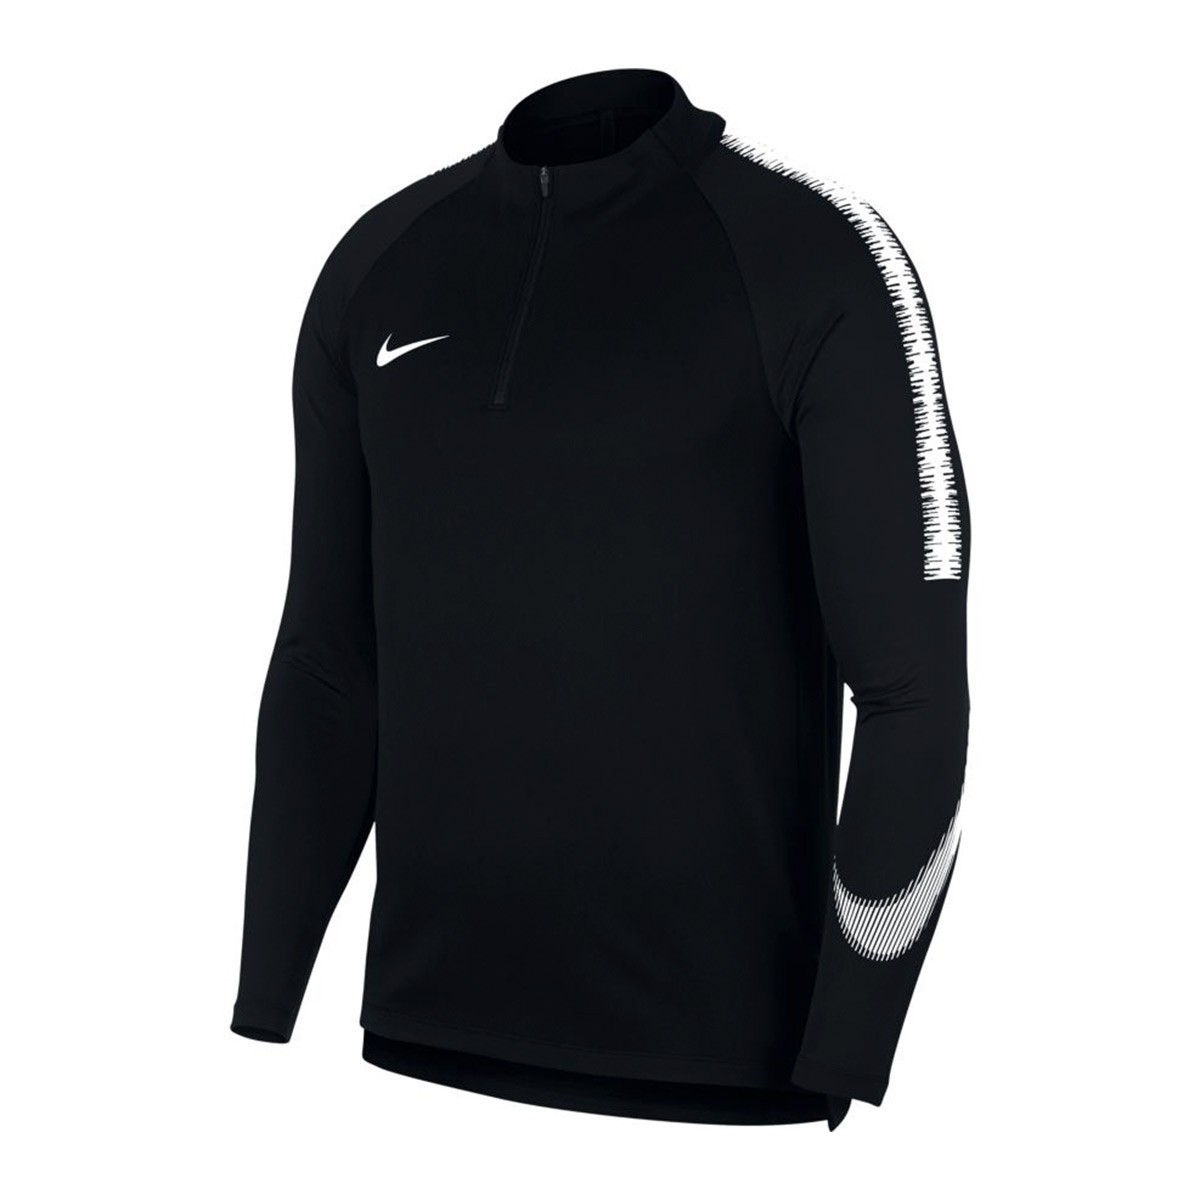 Sweatshirt Nike Dry Squad Black-White 